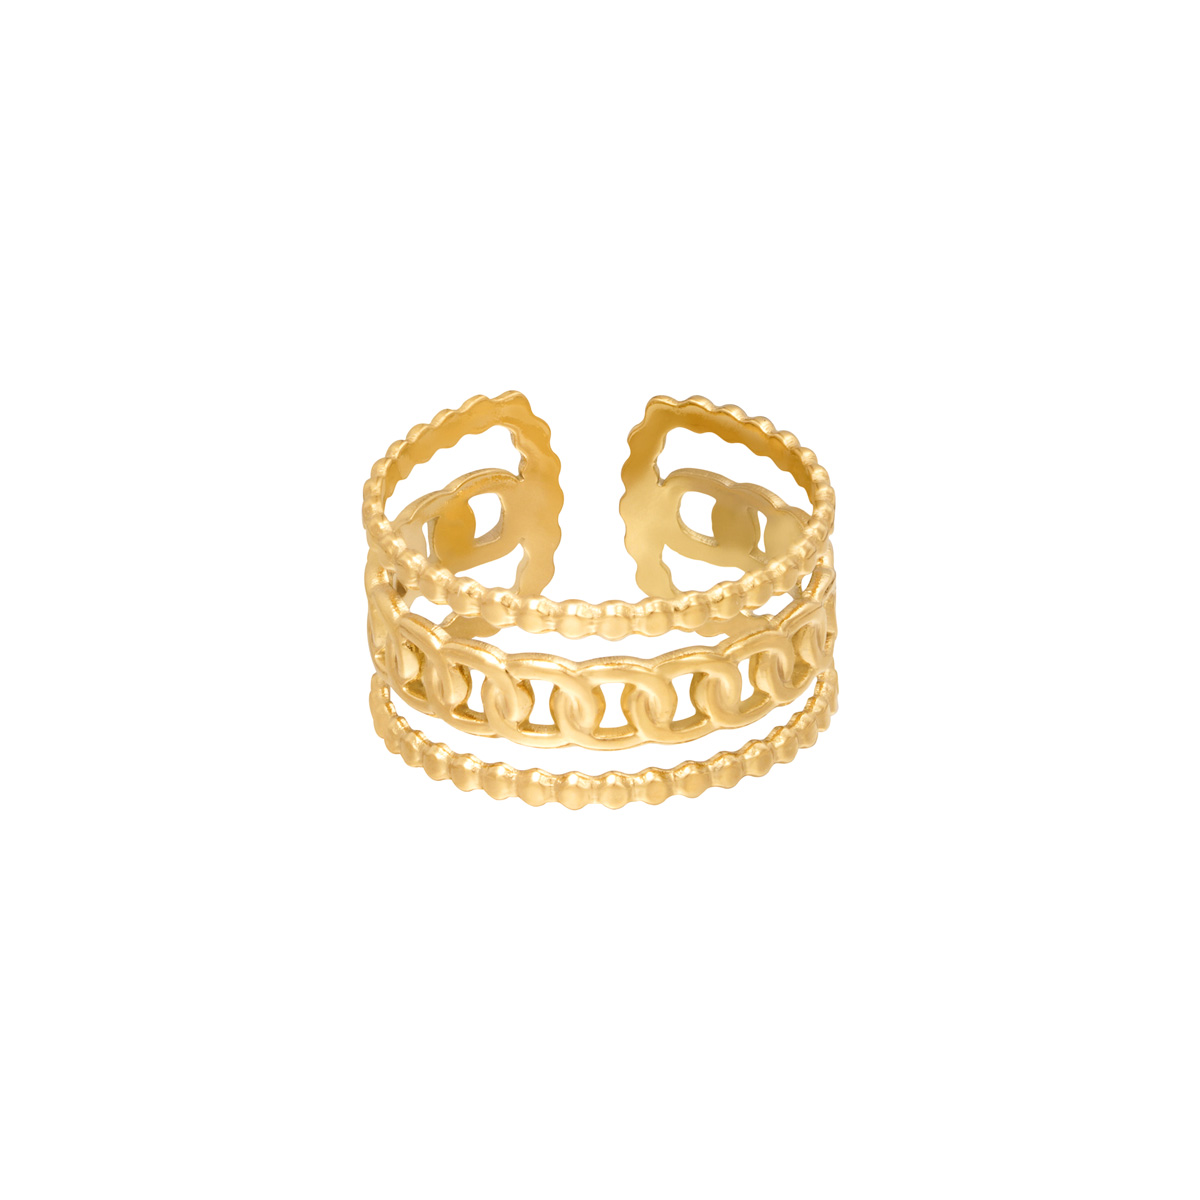 Brede Ring Sophie goud gouden trendy lagen ringen schakelketting detail yehwang sieraden bestellen kopen